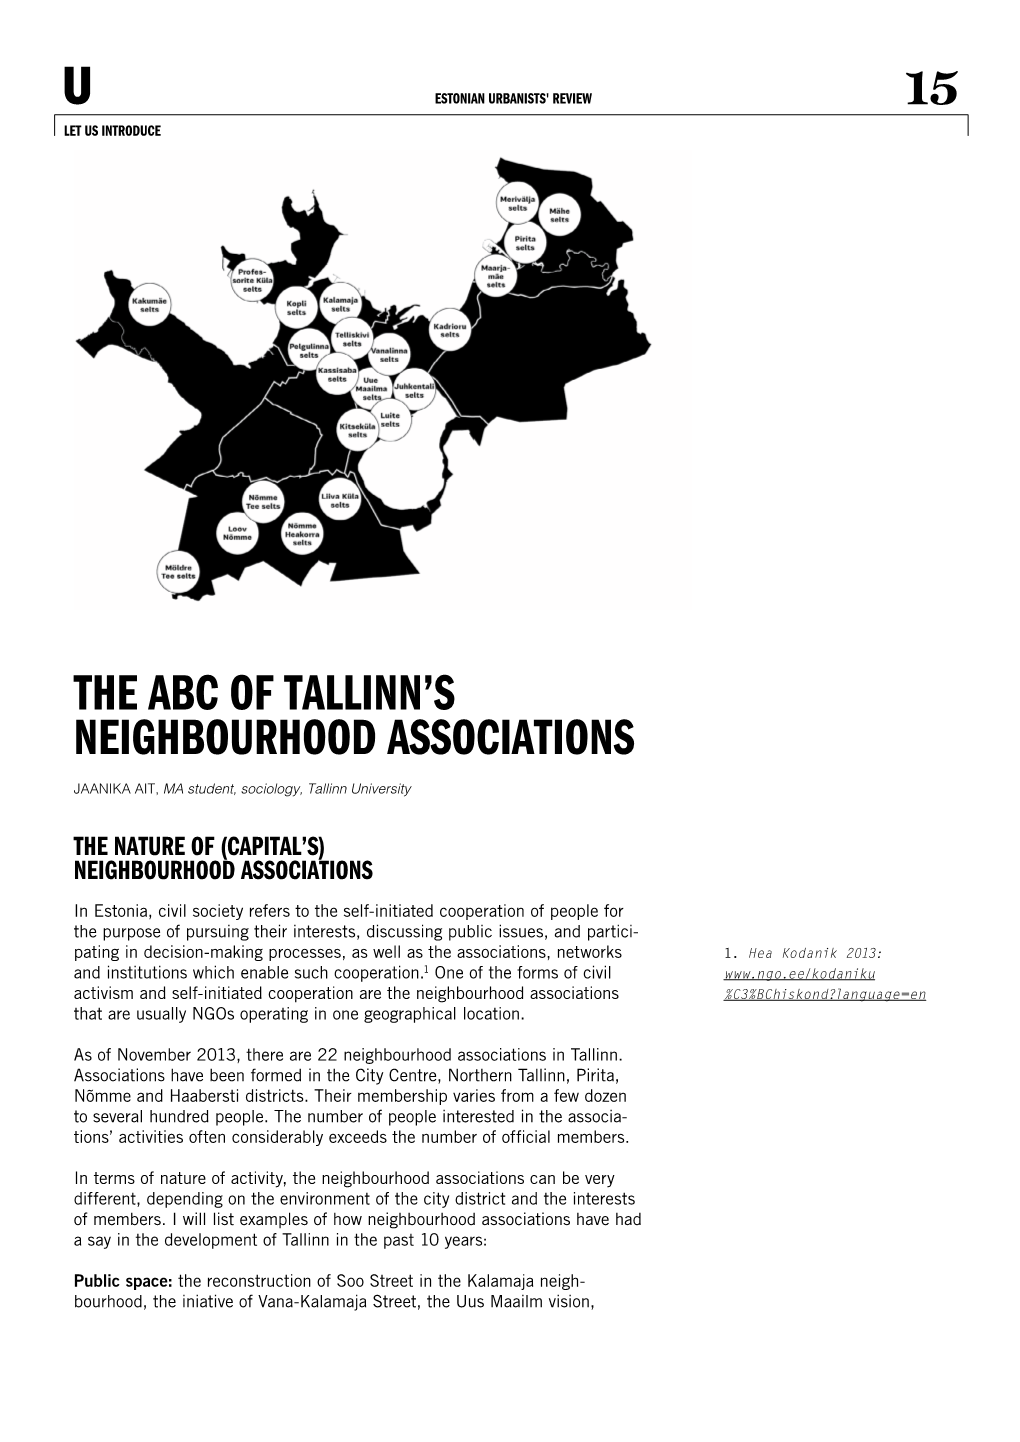 The Abc of Tallinn's Neighbourhood Associations